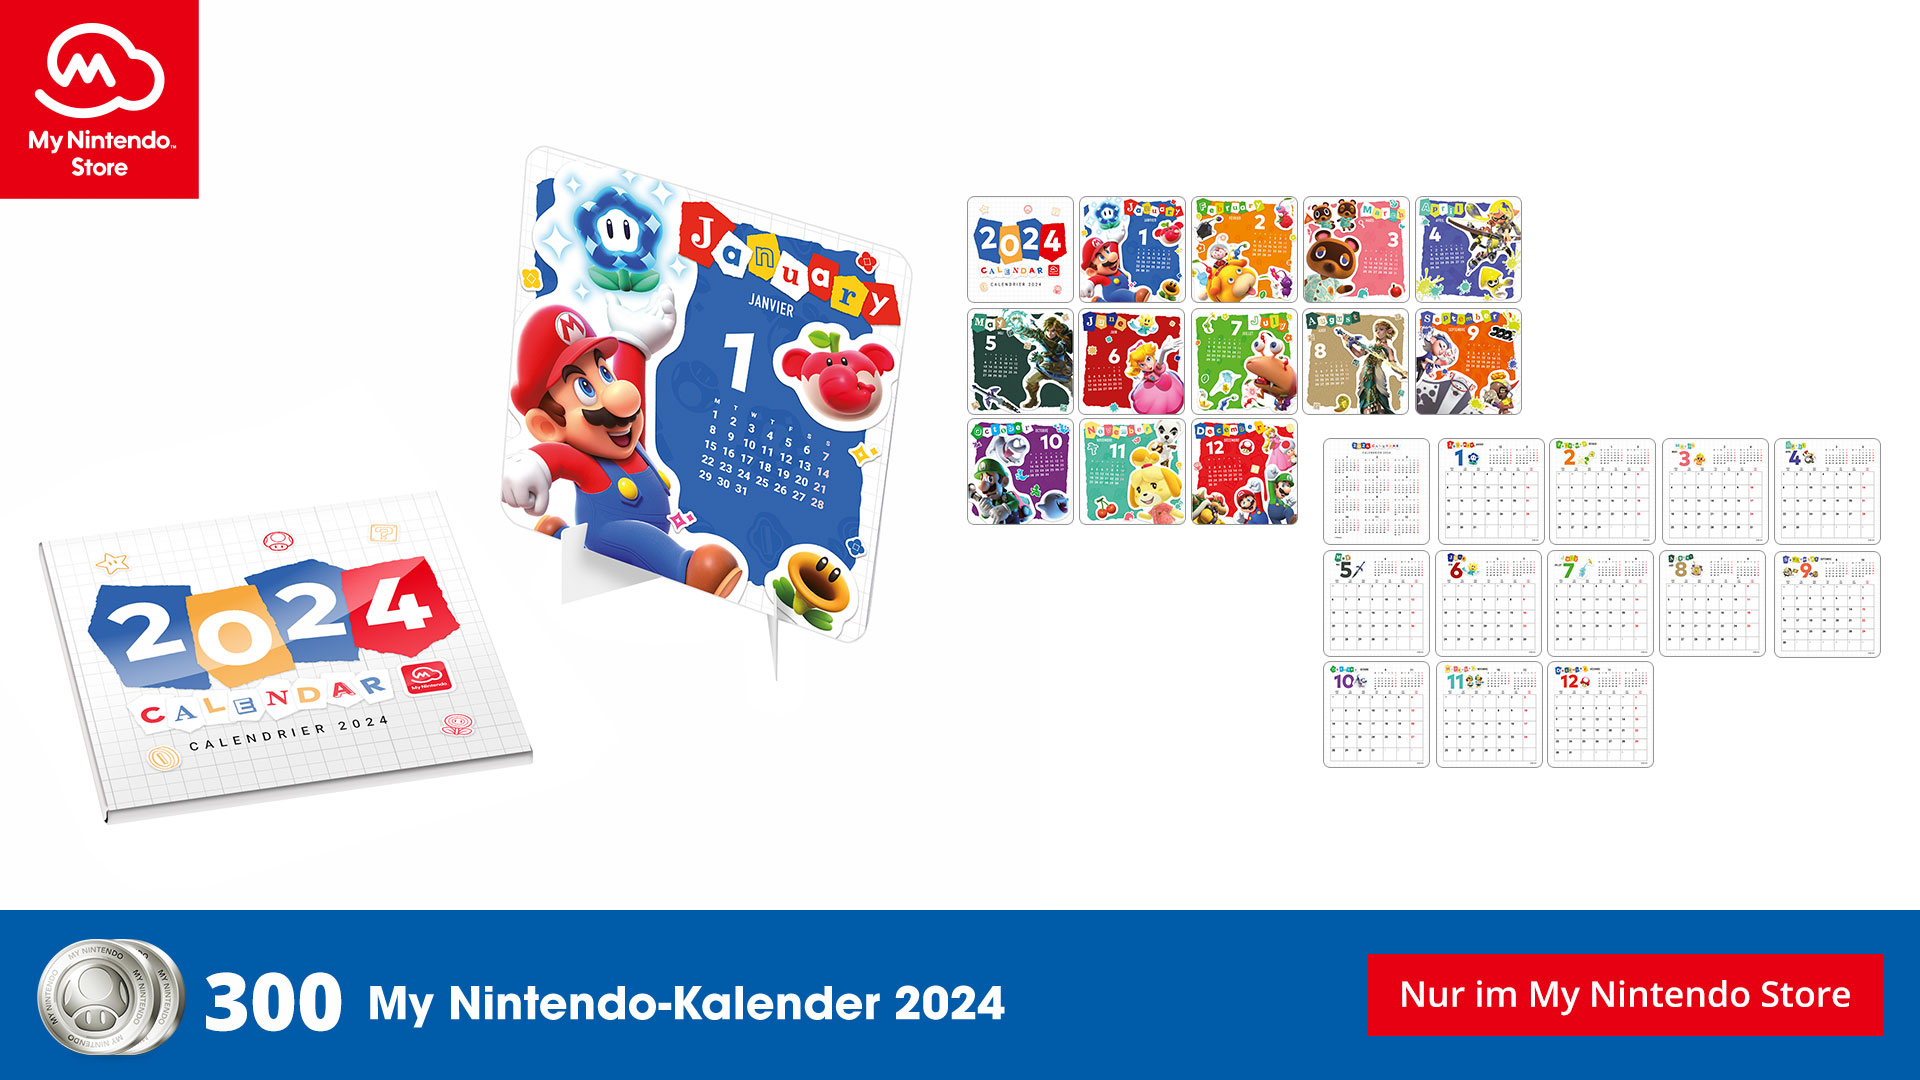 #Neue Gratis-Prämie: Holt euch jetzt den Nintendo-Kalender für 2024 bei My Nintendo